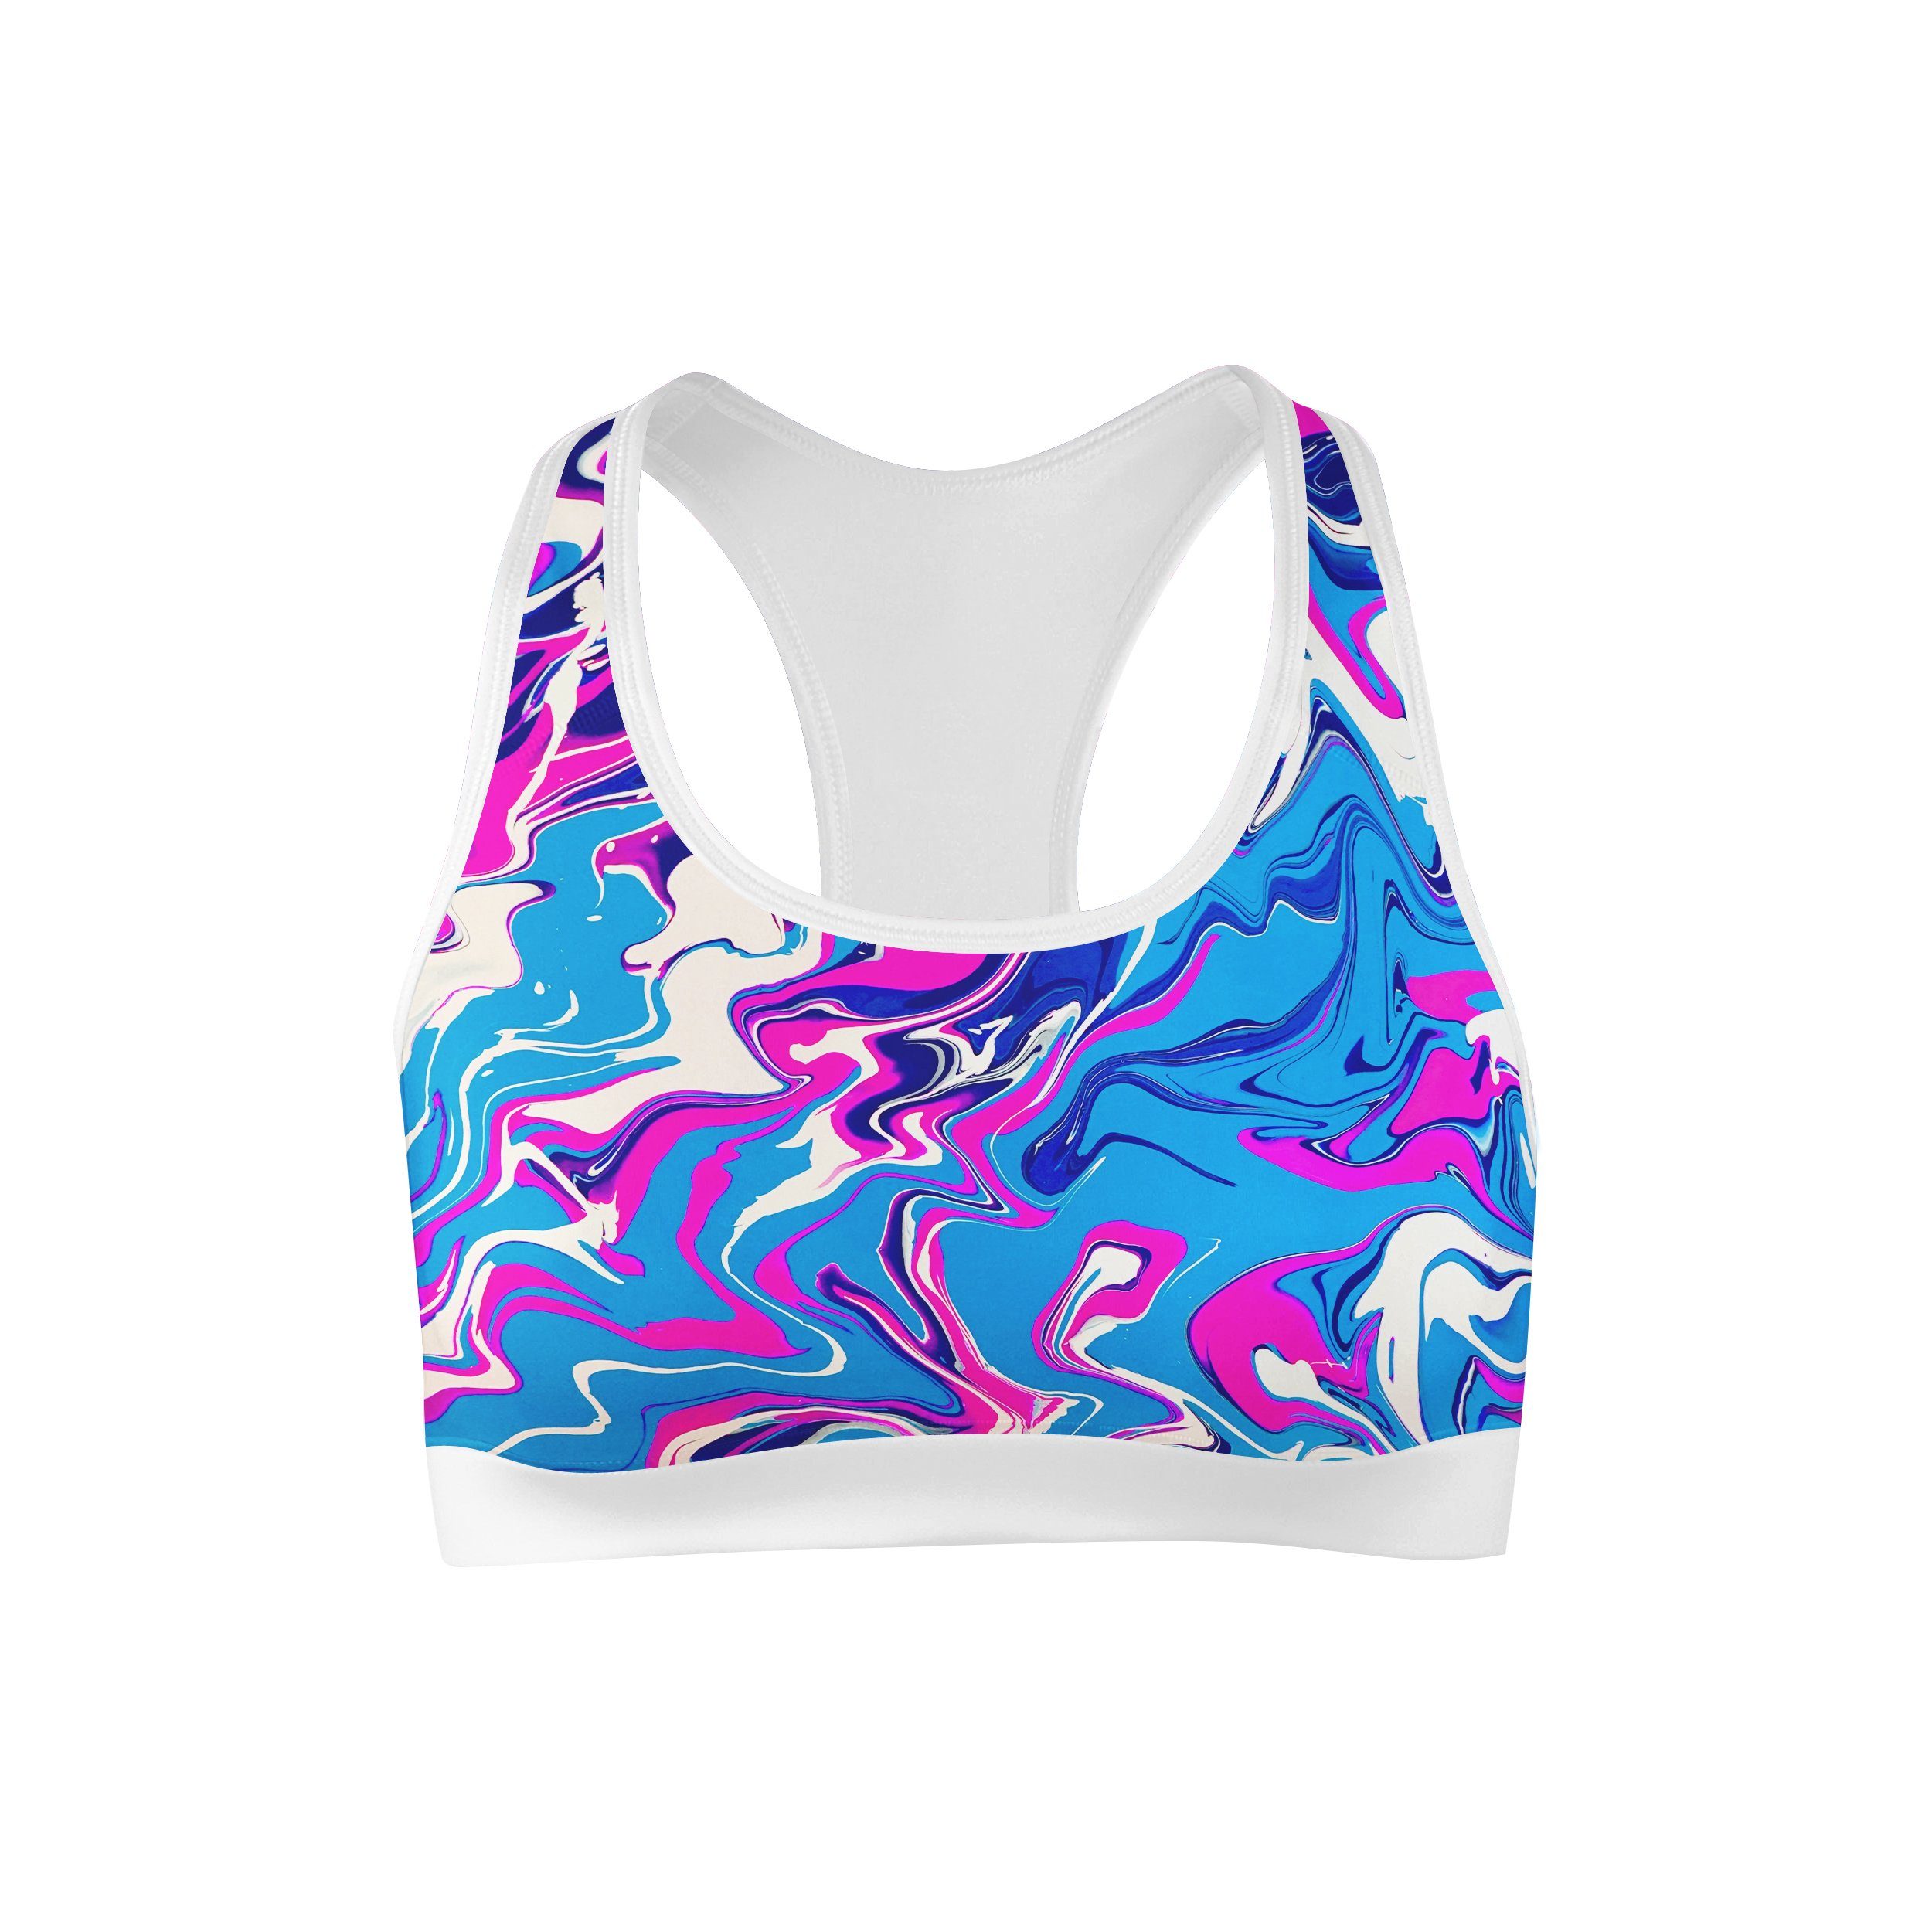 Elation adjustable sports bra - coastal blue – Blockout Clothing